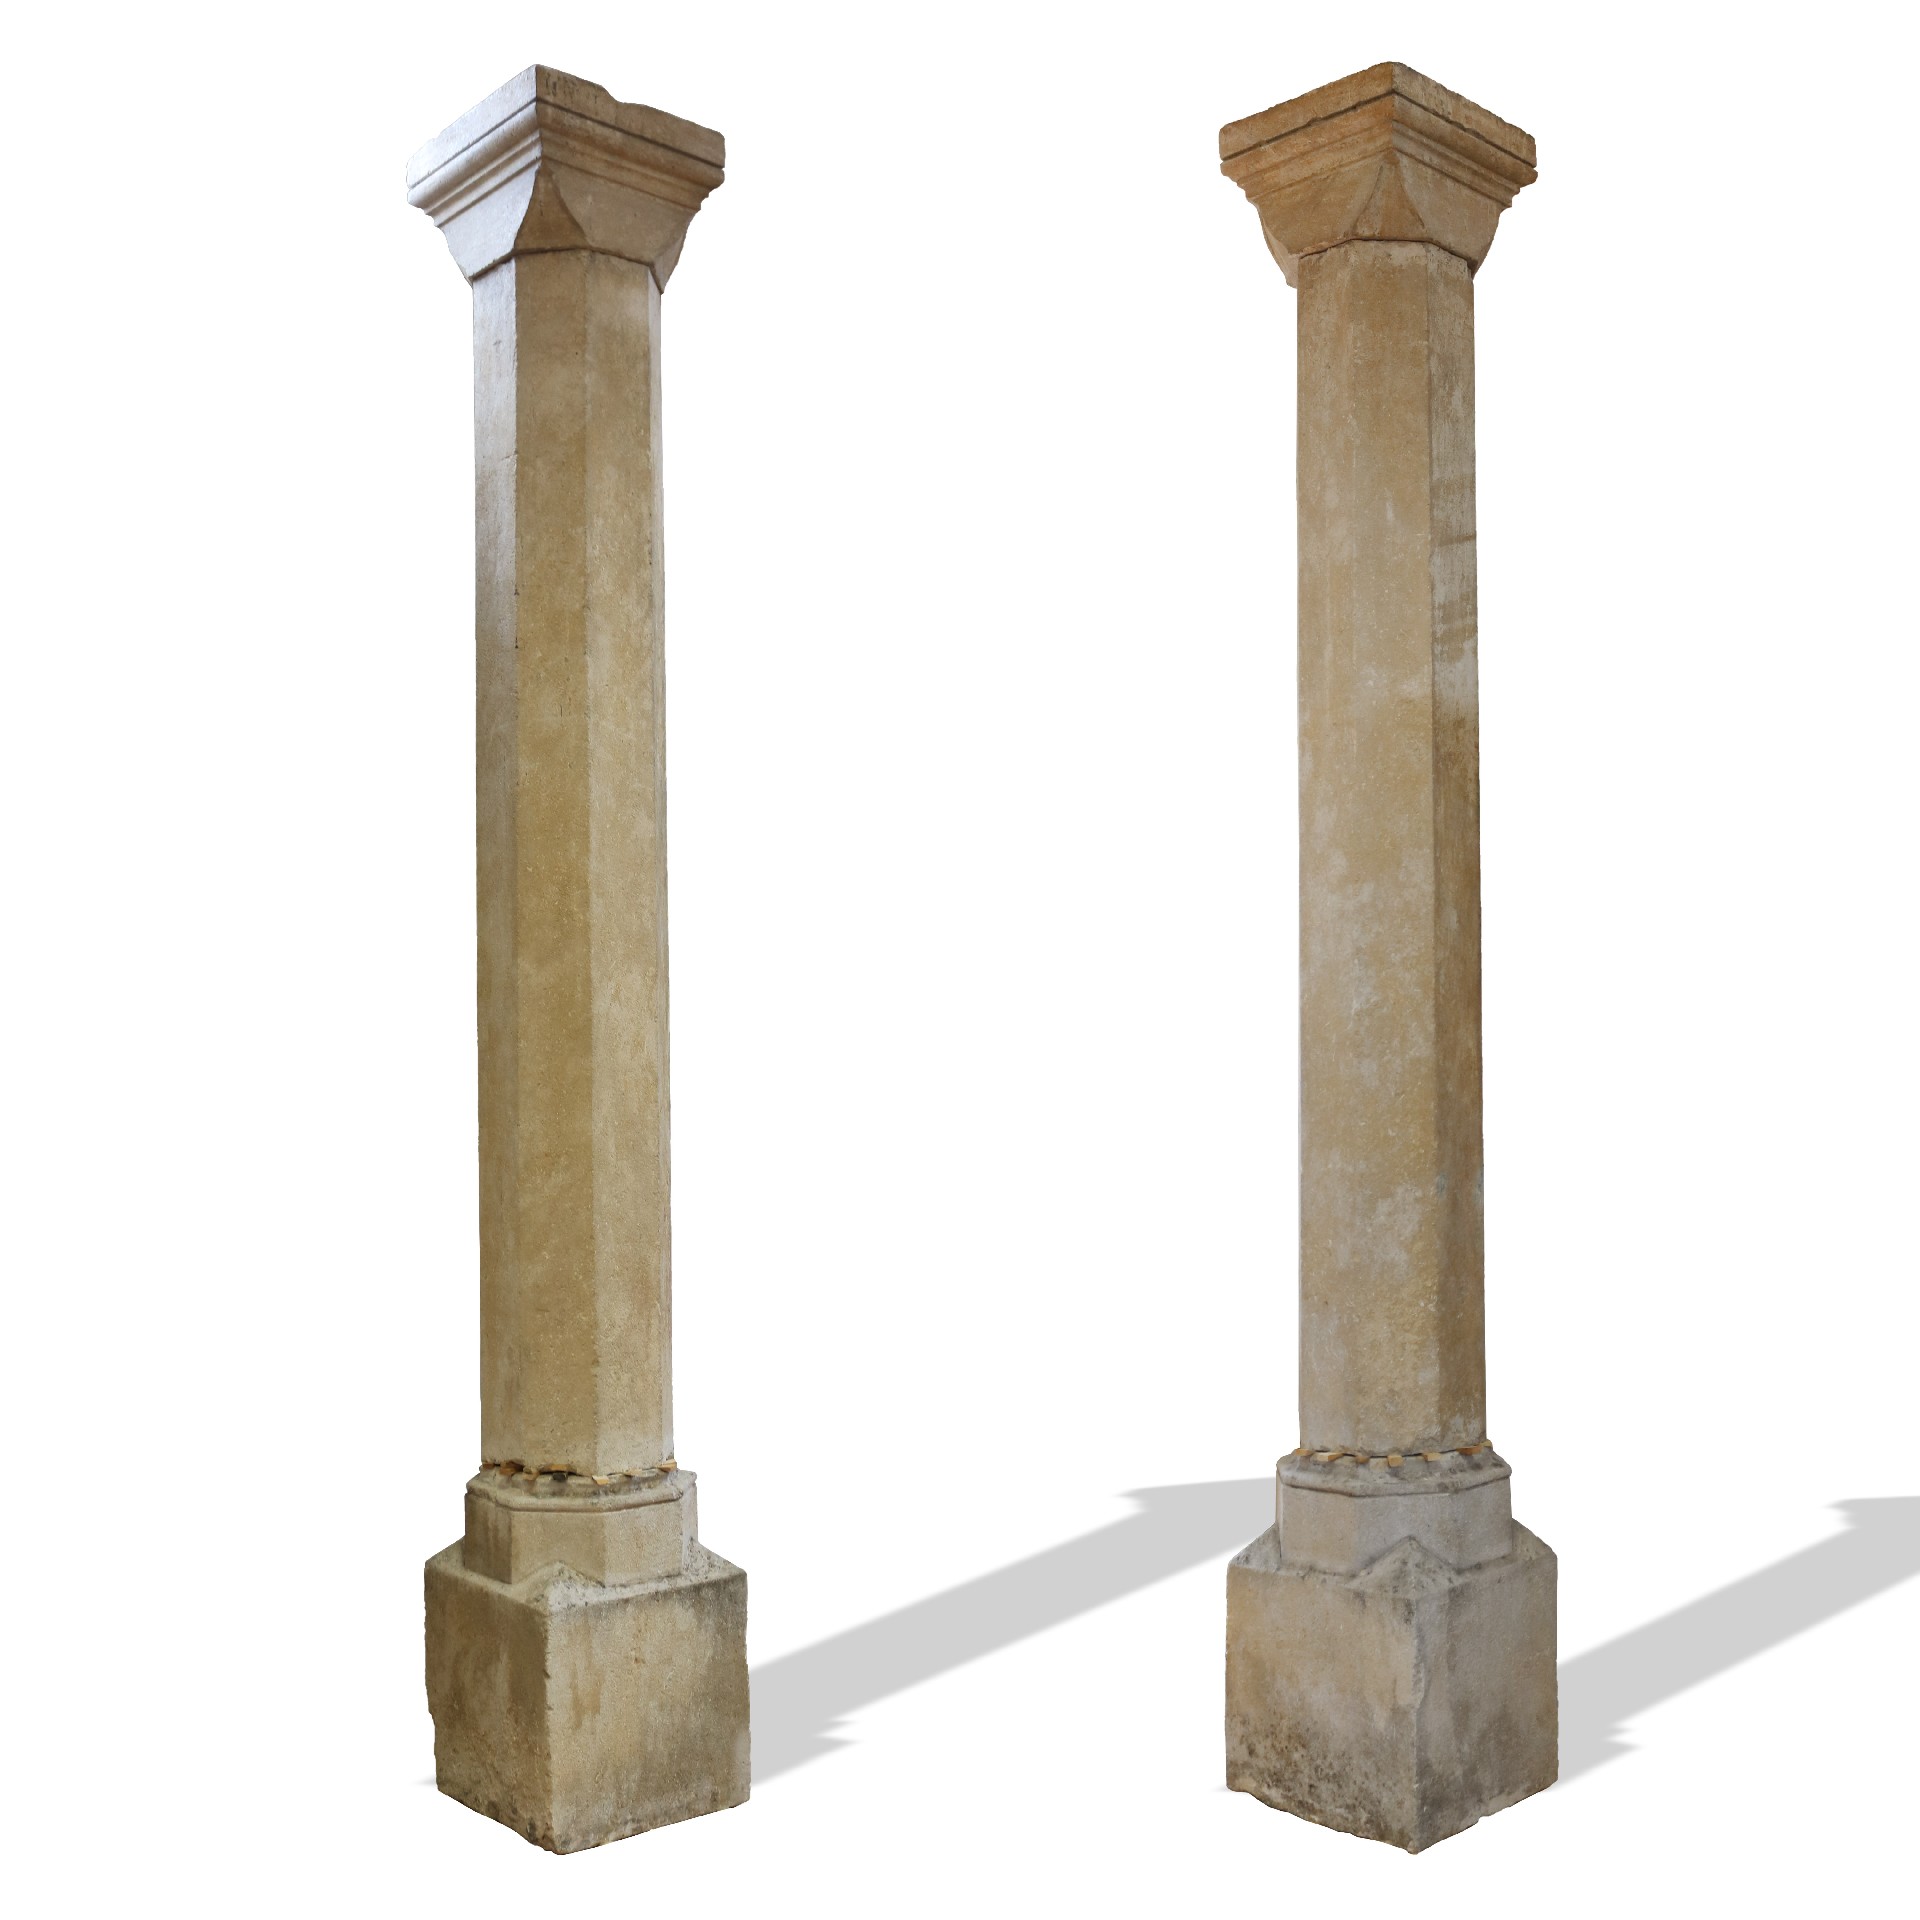 Coppia di colonne antiche in pietra. - Colonne antiche - Architettura - Prodotti - Antichità Fiorillo